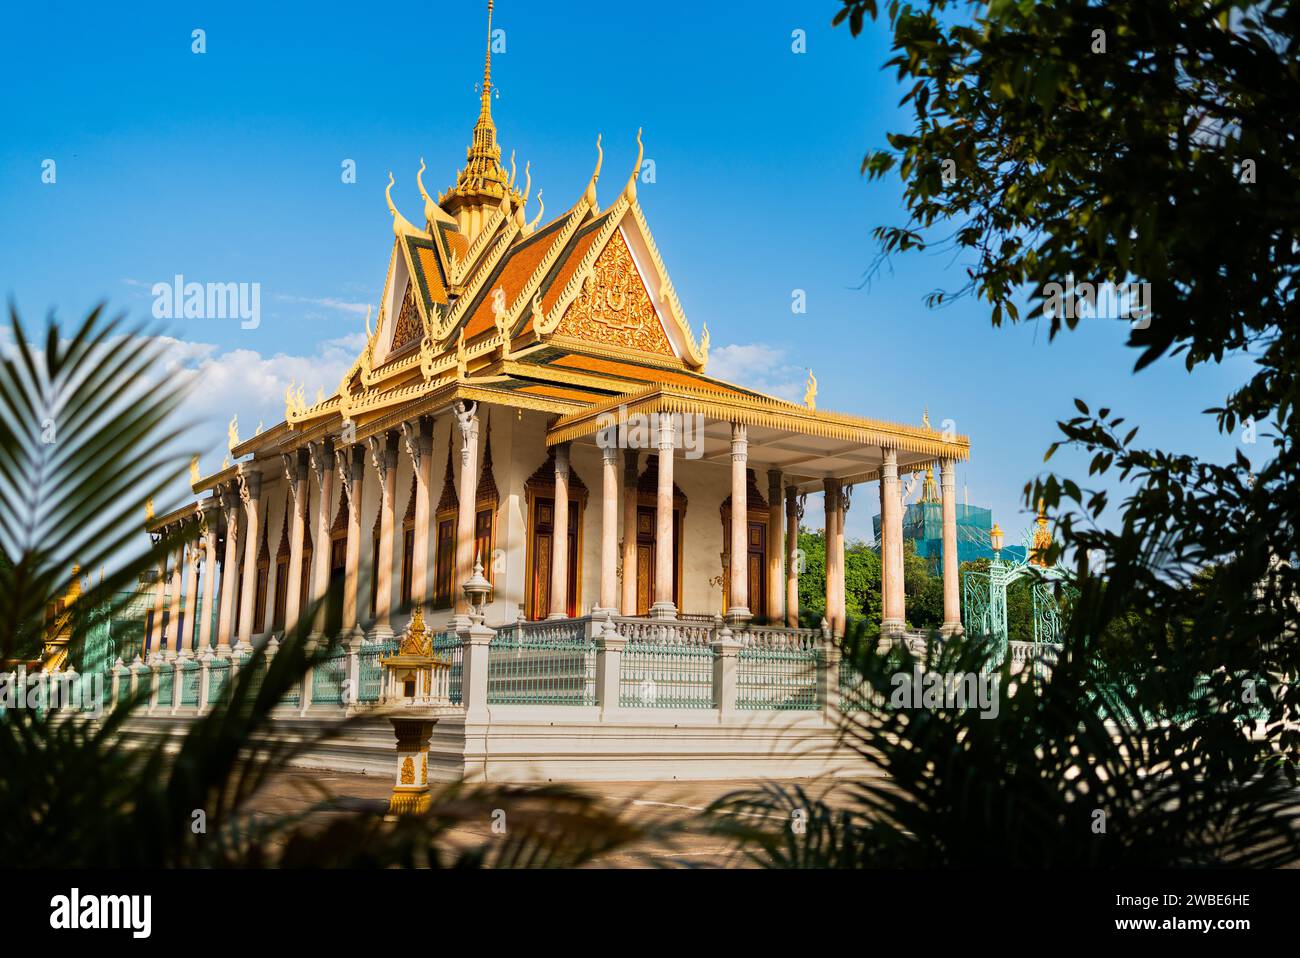 Phnom Penh, Kambodscha. Königspalast, Silberpagode. Reise und Tourismus in Asien. Wahrzeichen der buddhistischen Kultur. Touristenattraktion in der Hauptstadt. Stockfoto